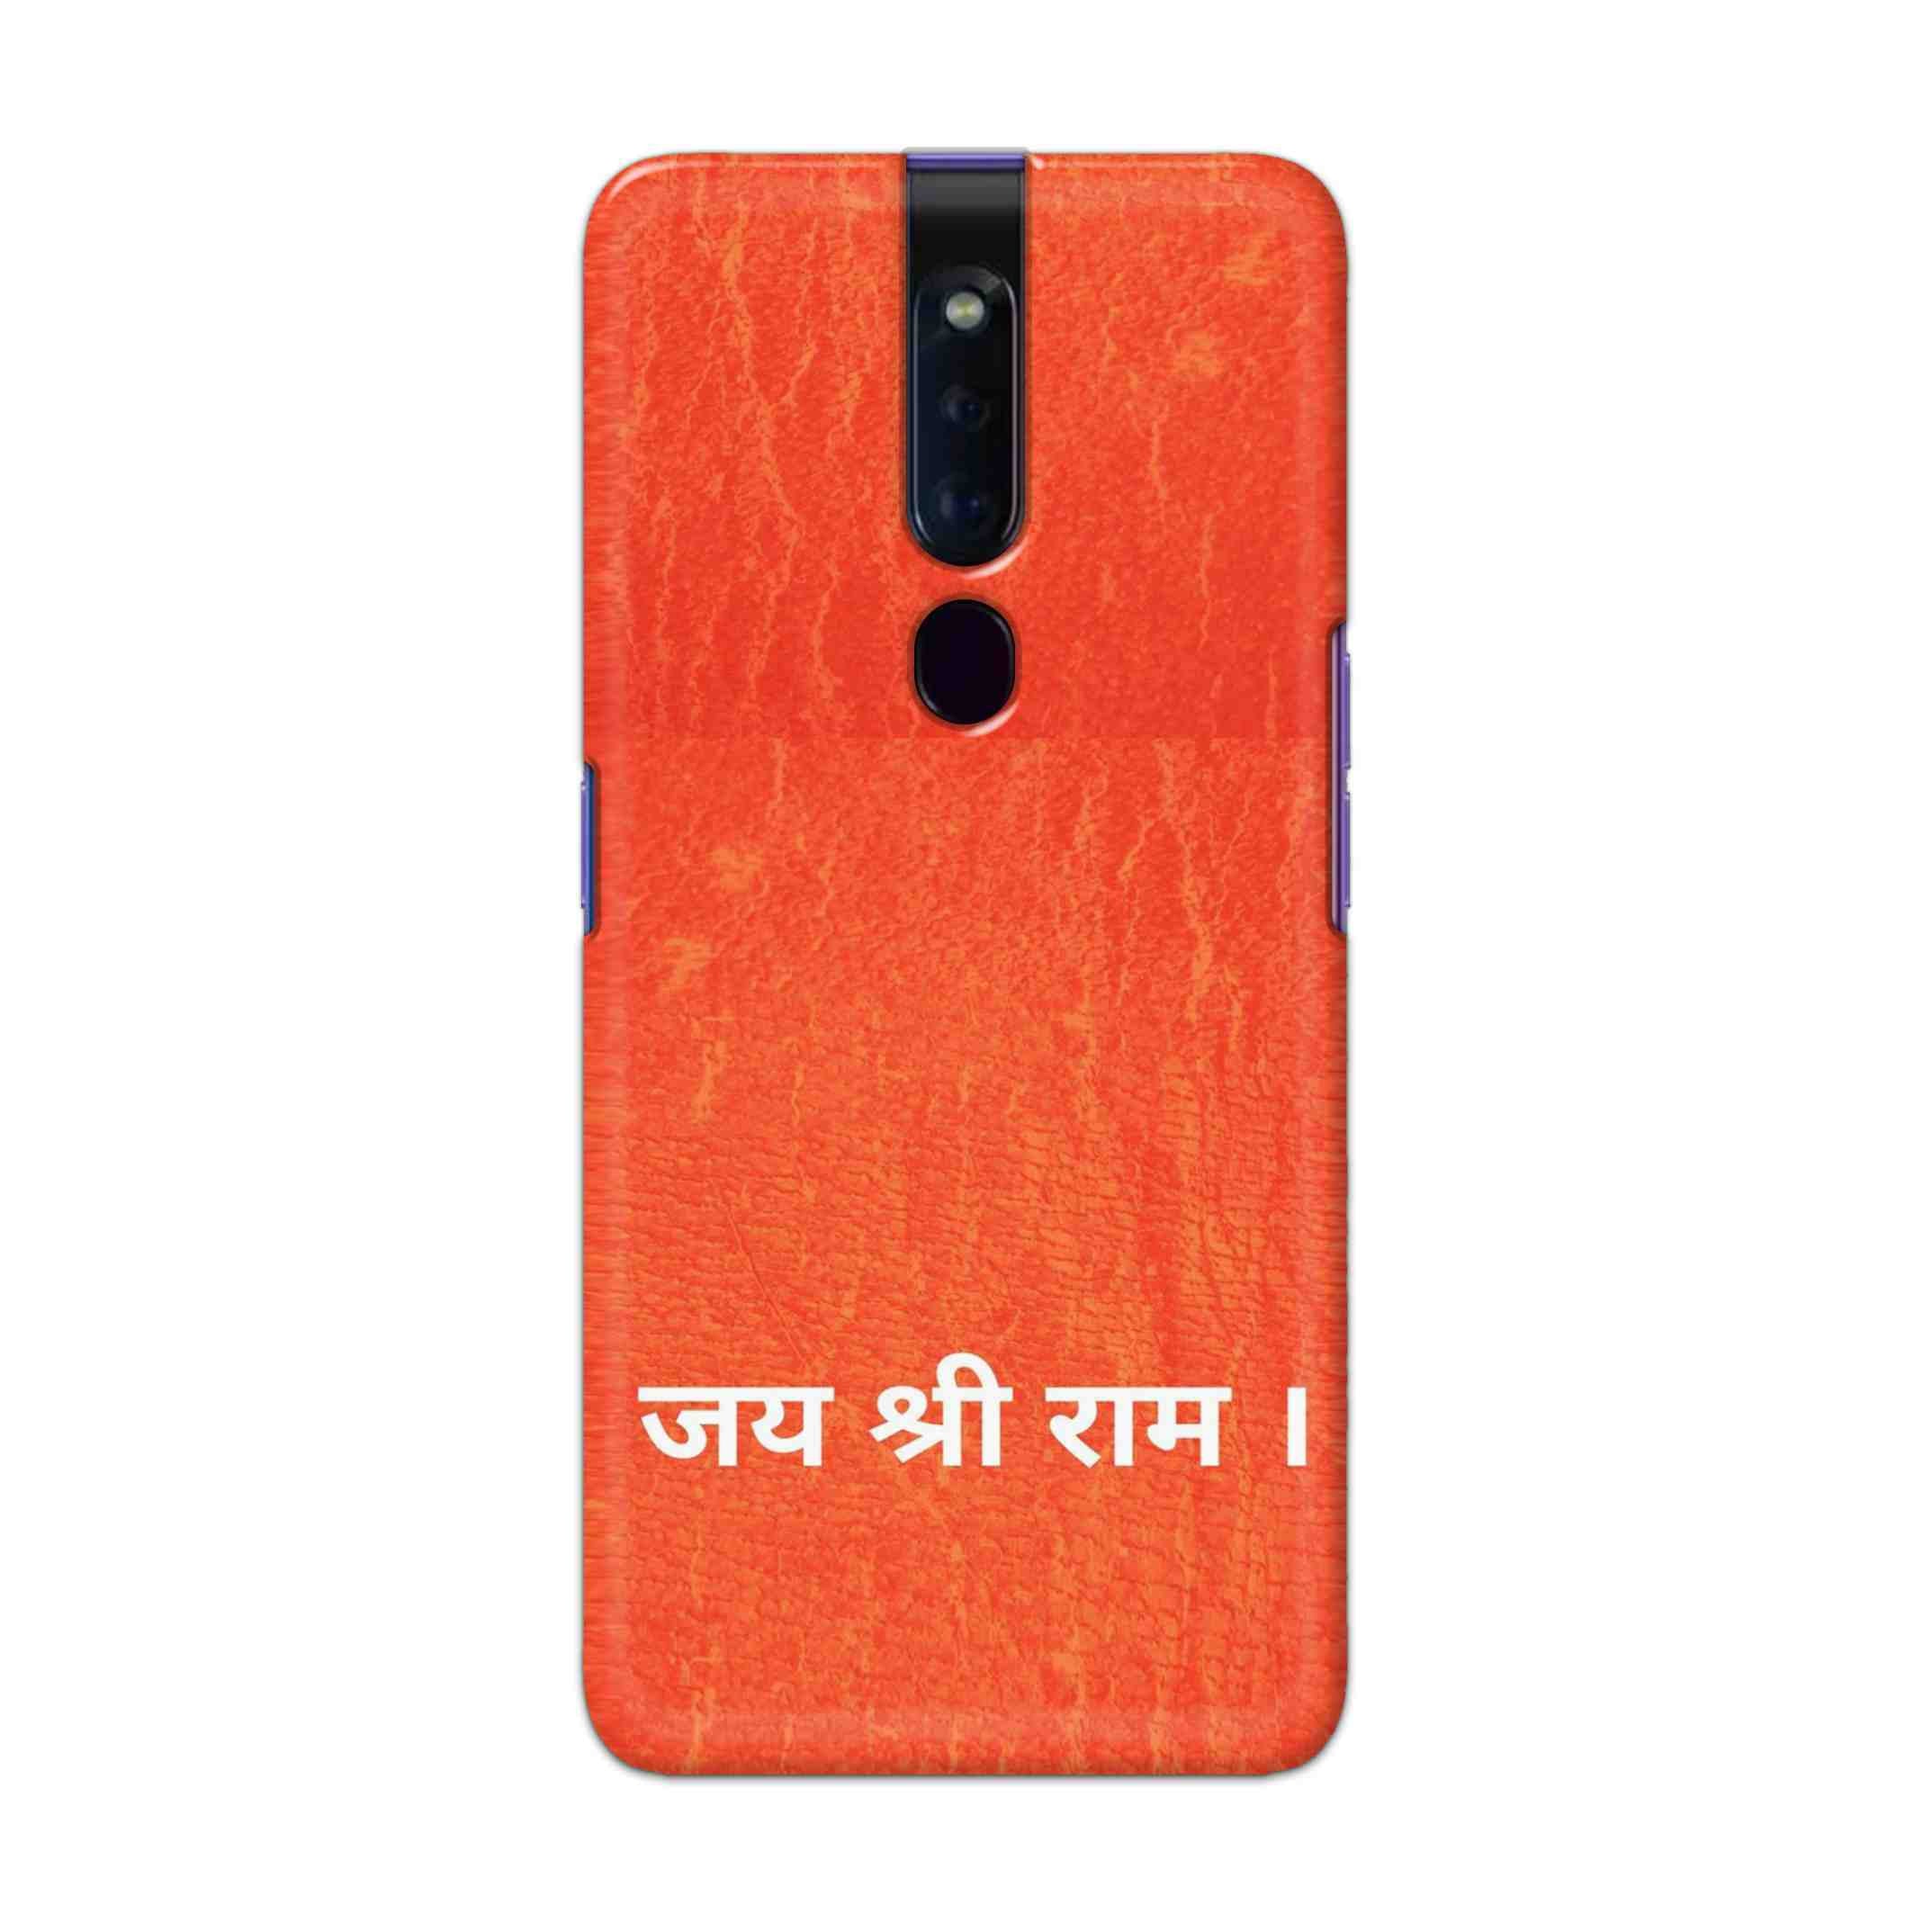 Buy Jai Shree Ram Hard Back Mobile Phone Case Cover For Oppo F11 Pro Online